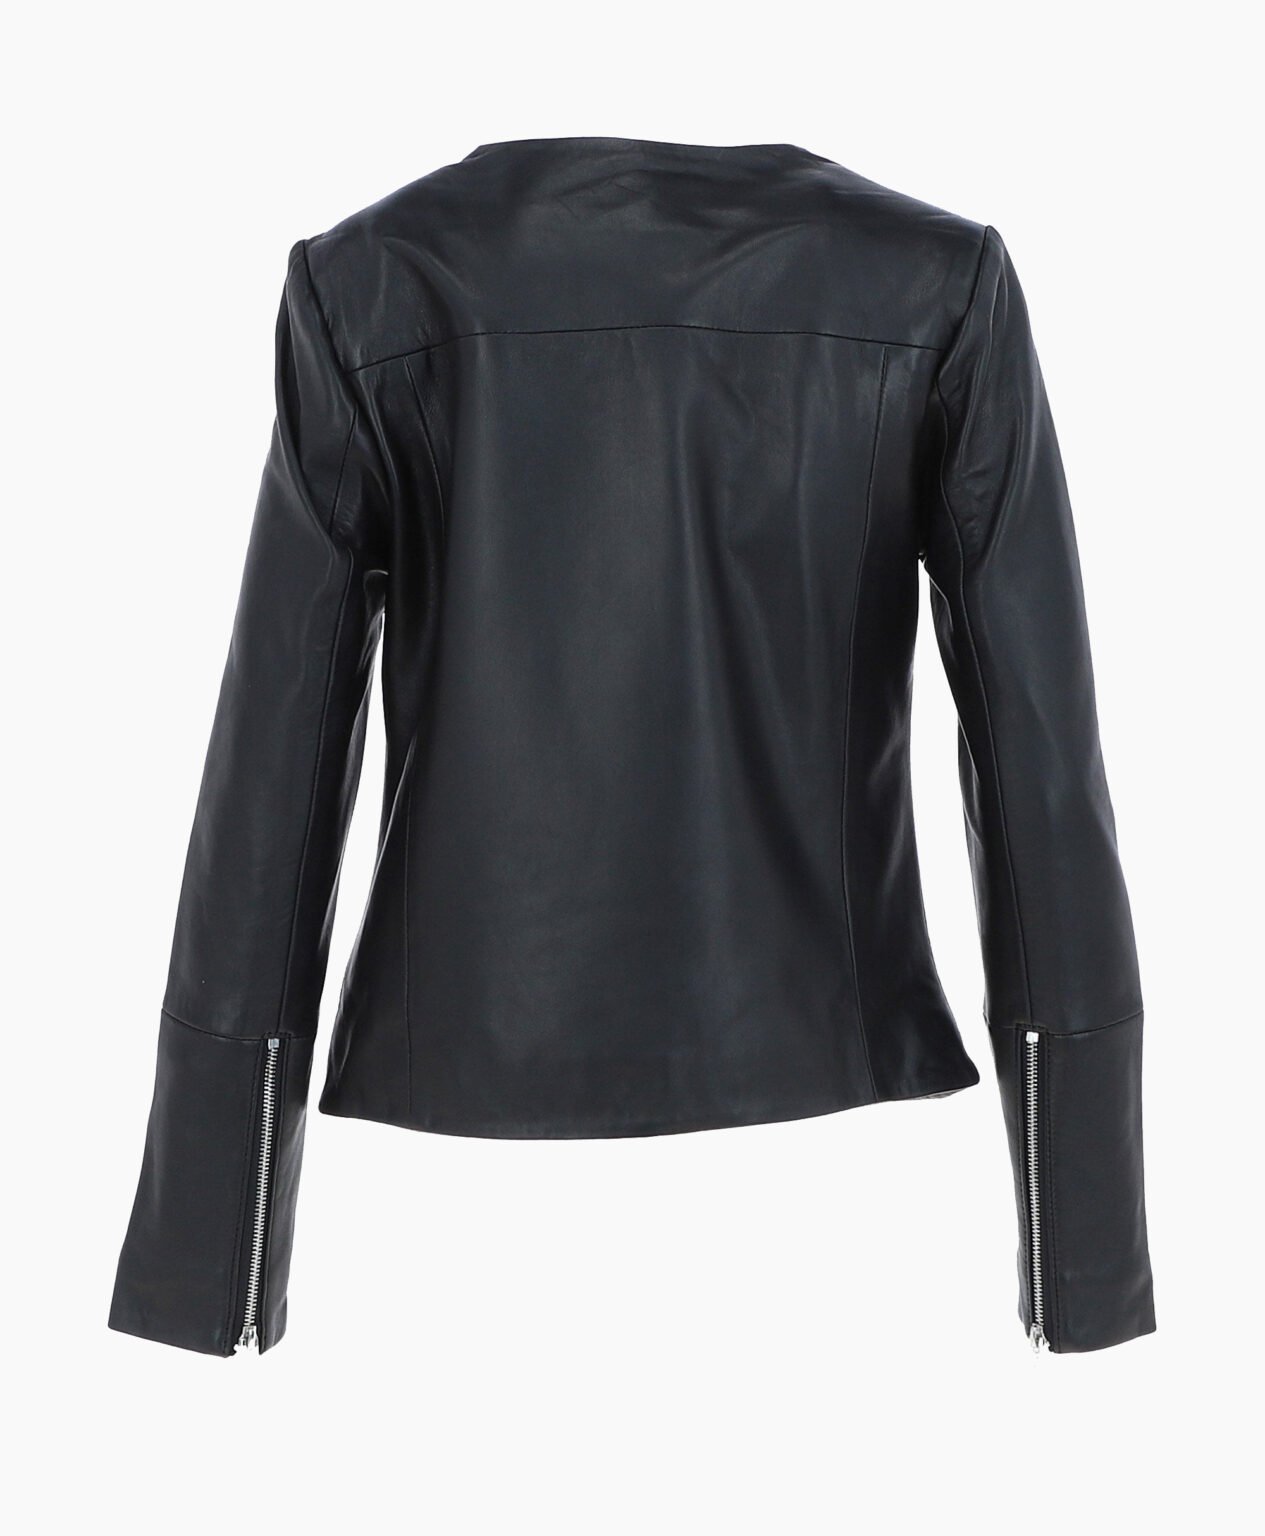 vogue-jacket-leather-fashion-jacket-black-elizabeth-image202